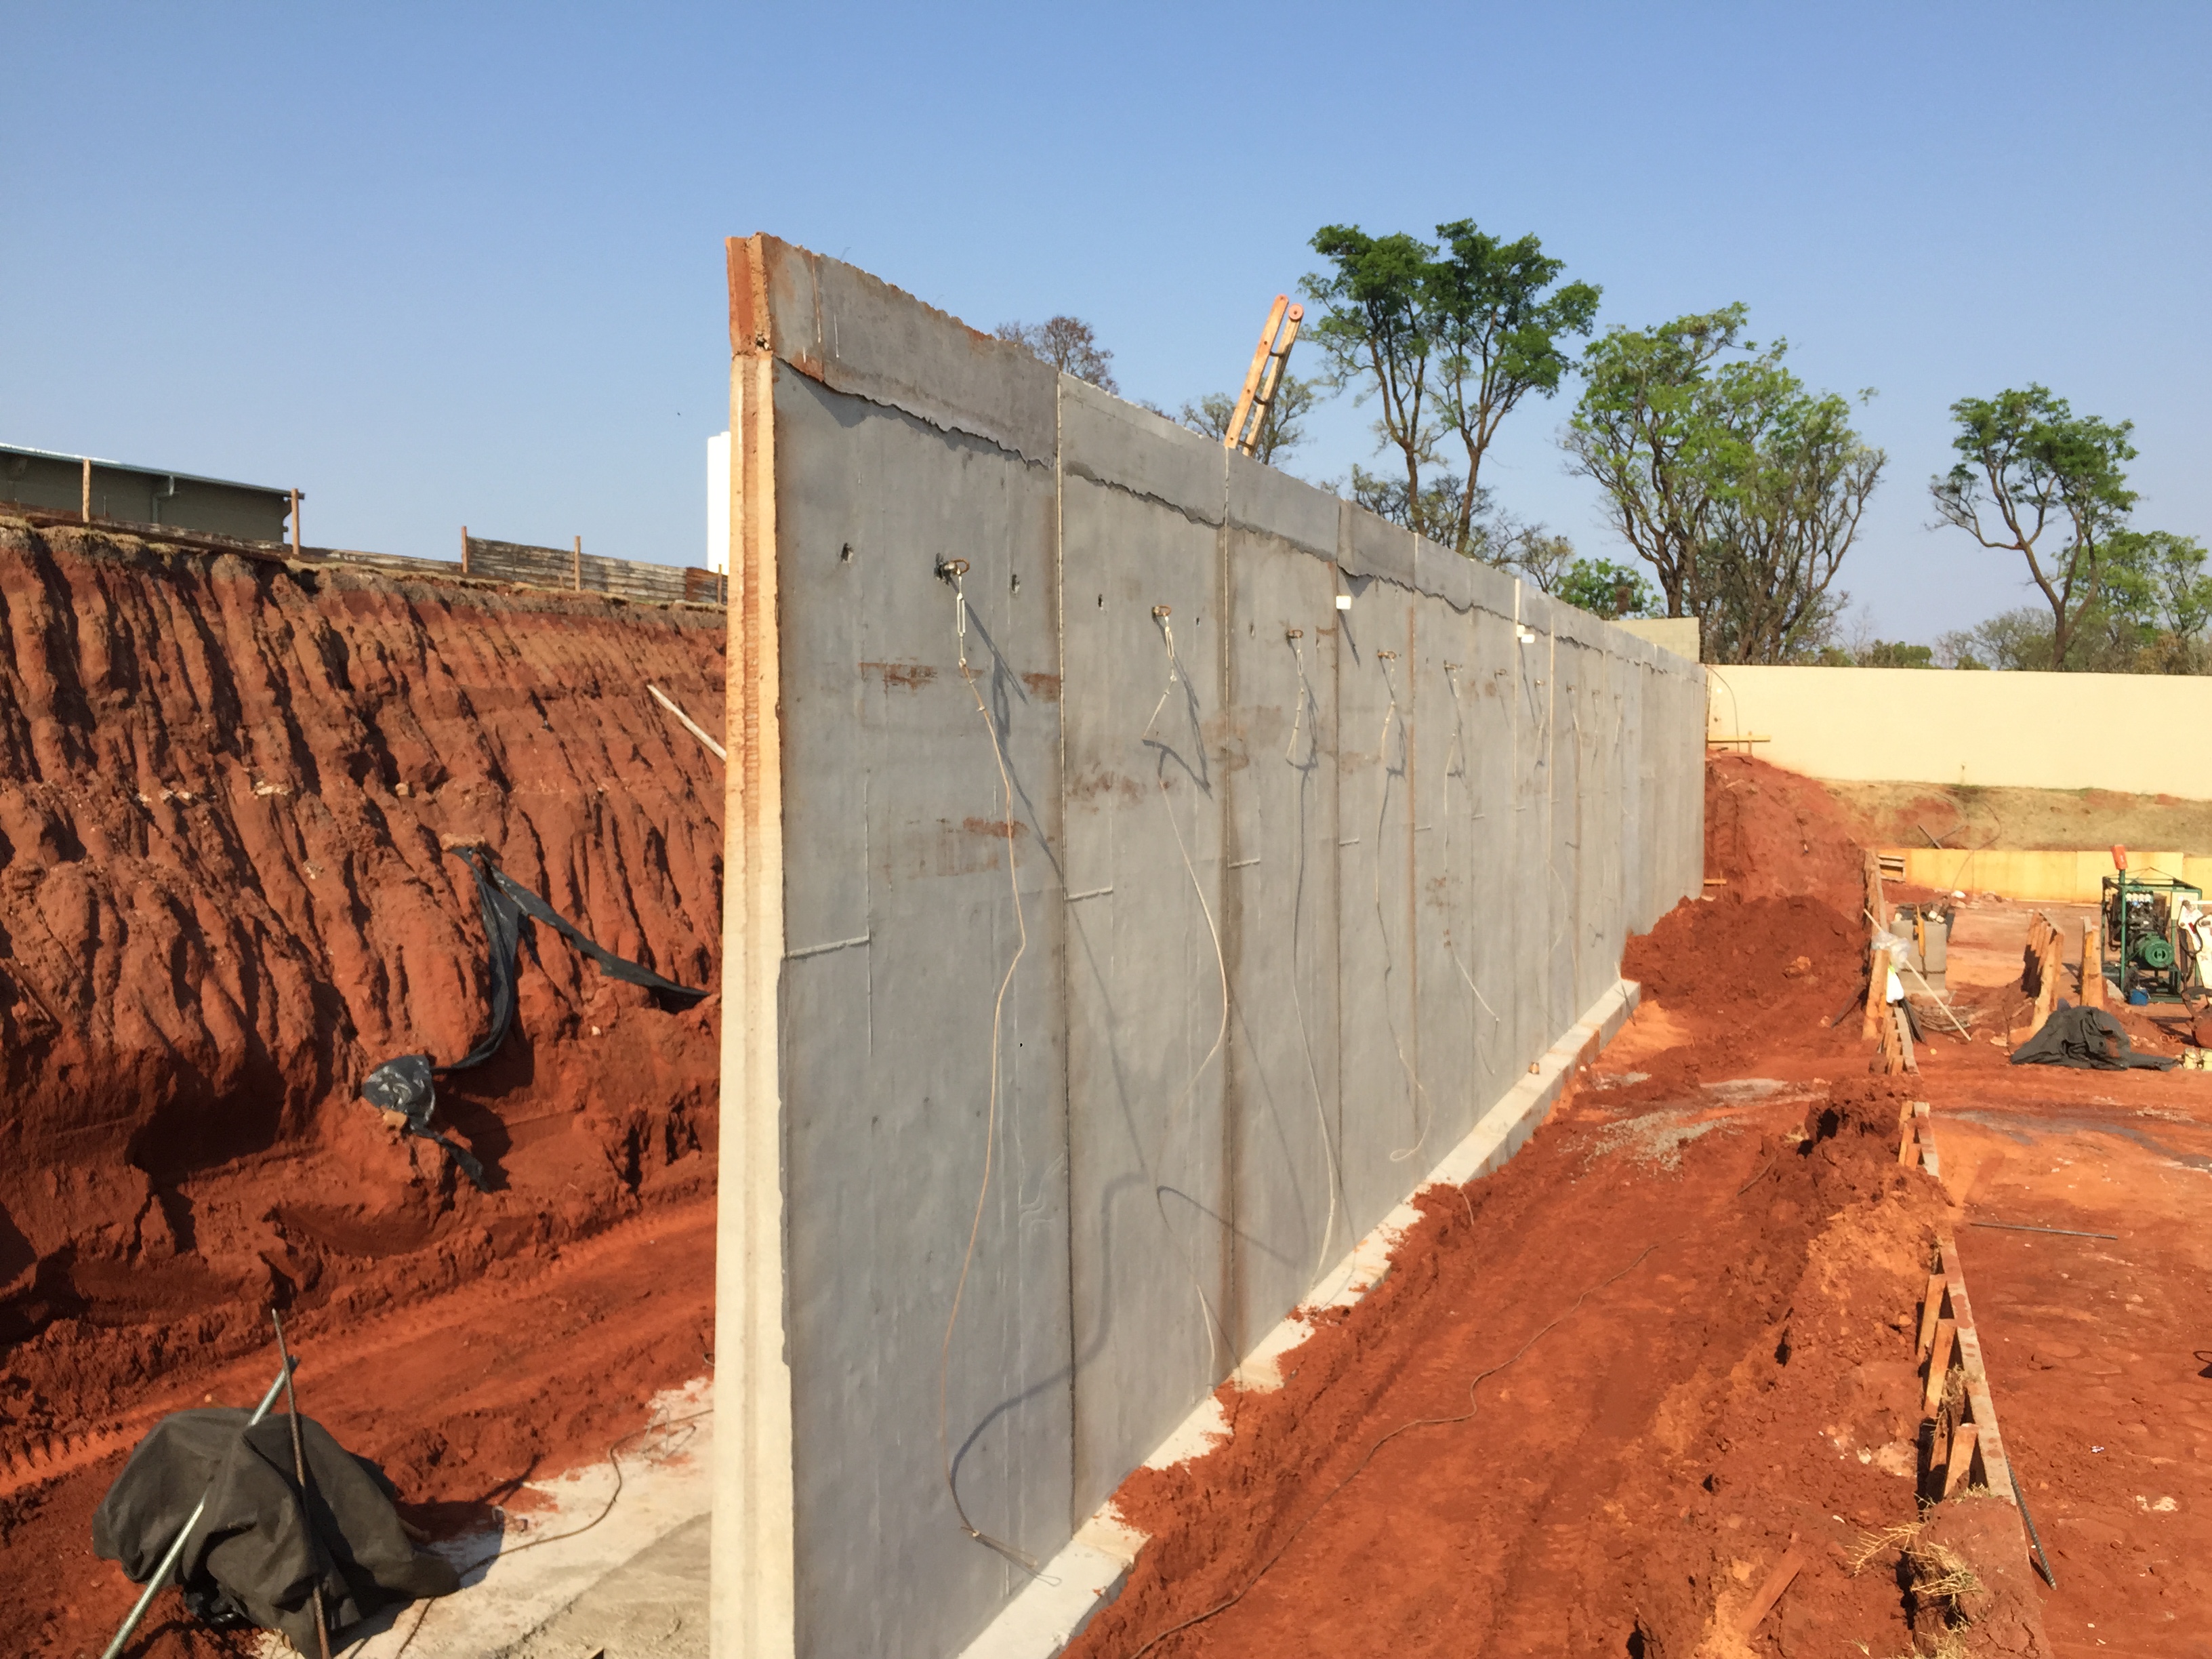 Como reforçar um muro de arrimo  Paredes de concreto, Construir um muro,  Muro de contenção